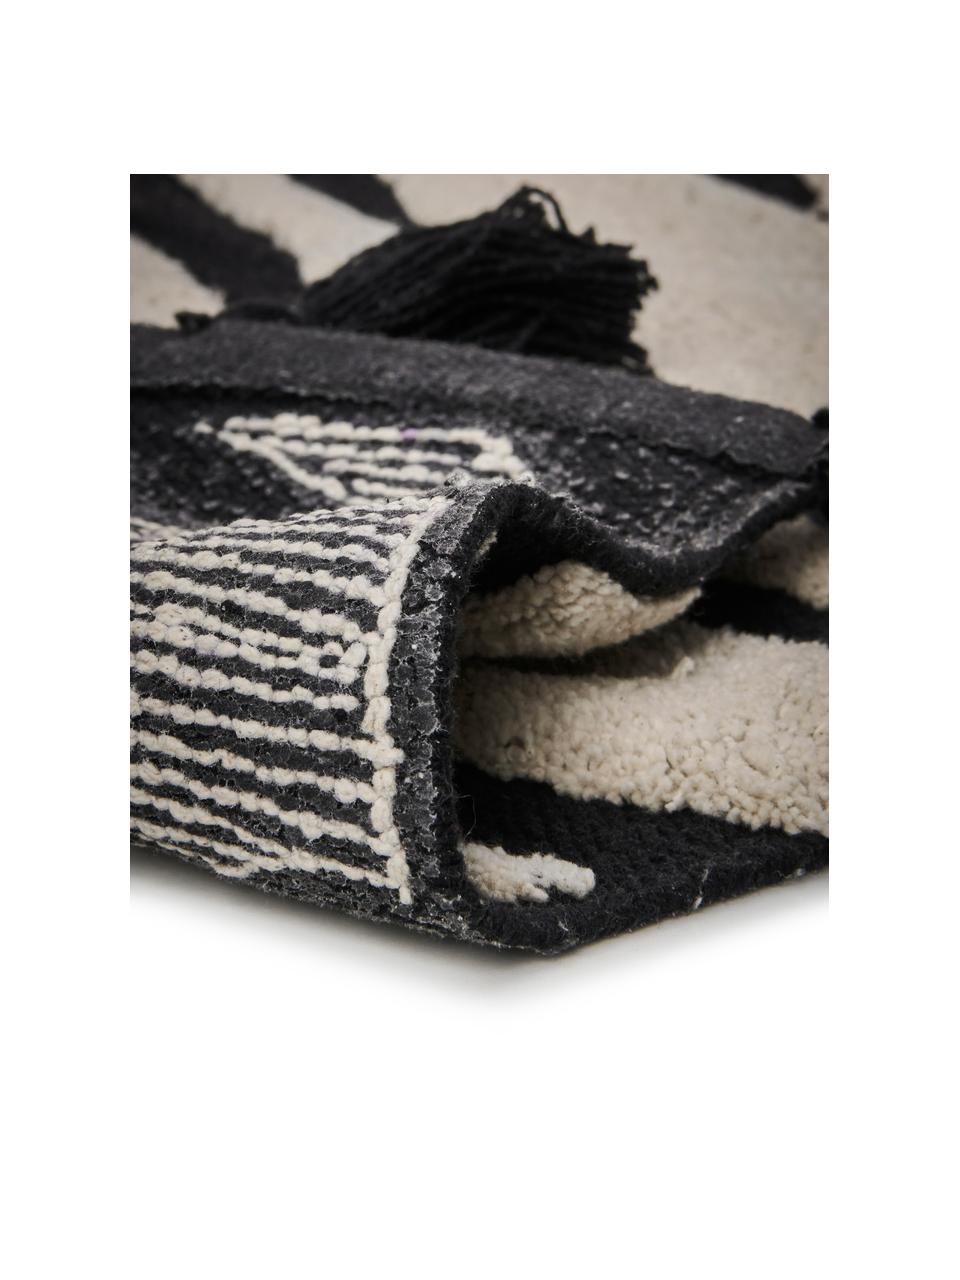 Badmat Lovely met zebra patroon en kwastjes, 100% katoen, Oeko-Tex®-gecertificeerd, Crèmewit, zwart, B 50 x L 80 cm